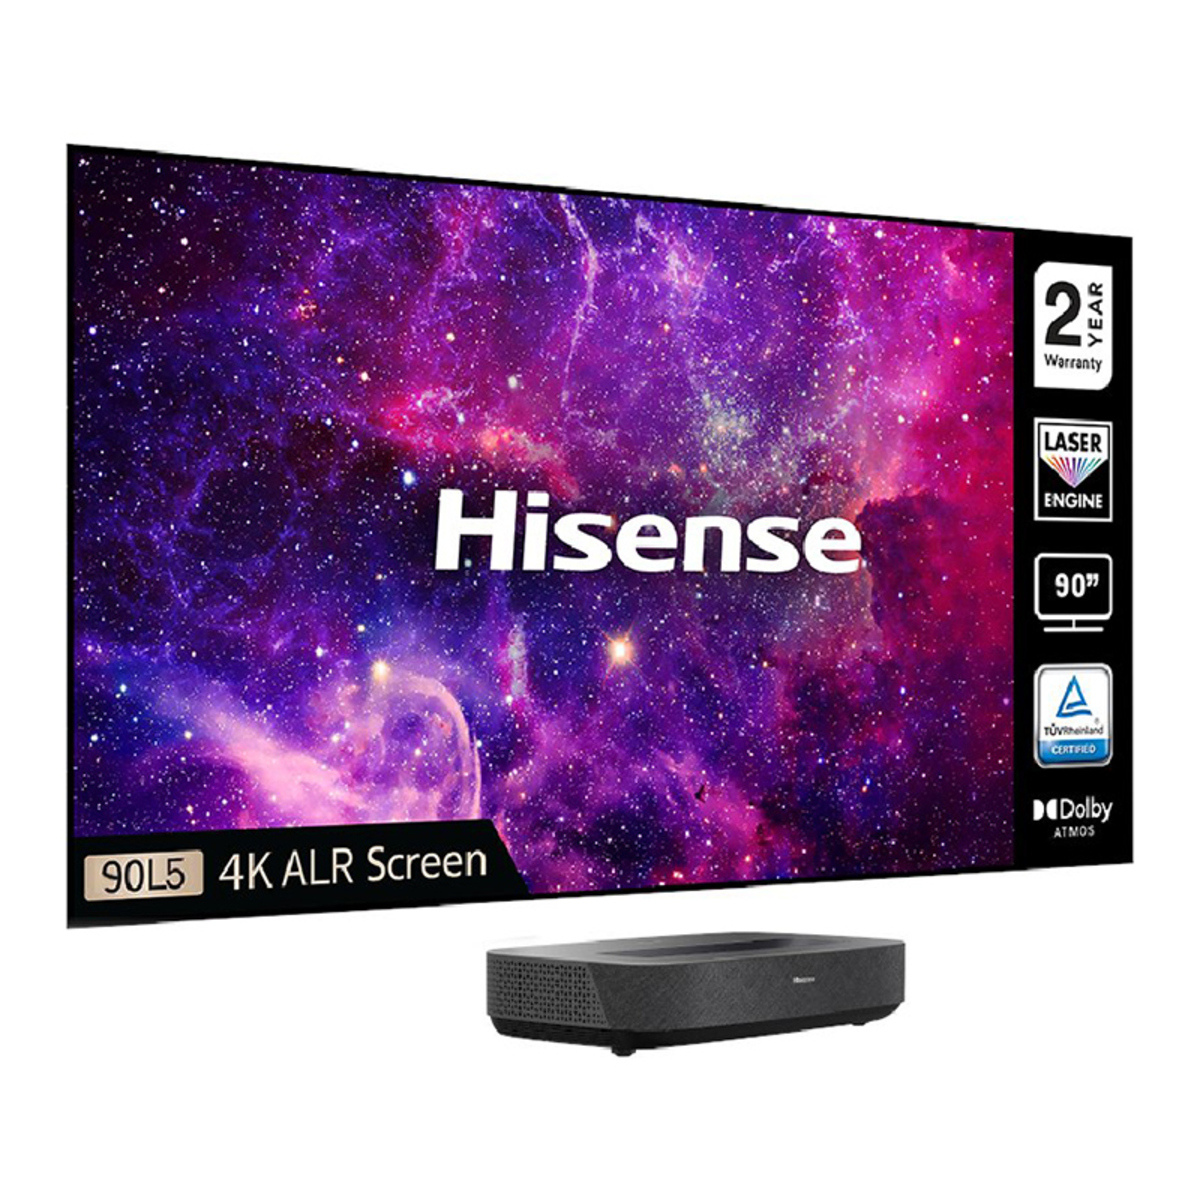 Hisense 90L5HTUKD 90 90L5 4K HDR Smart Laser TV